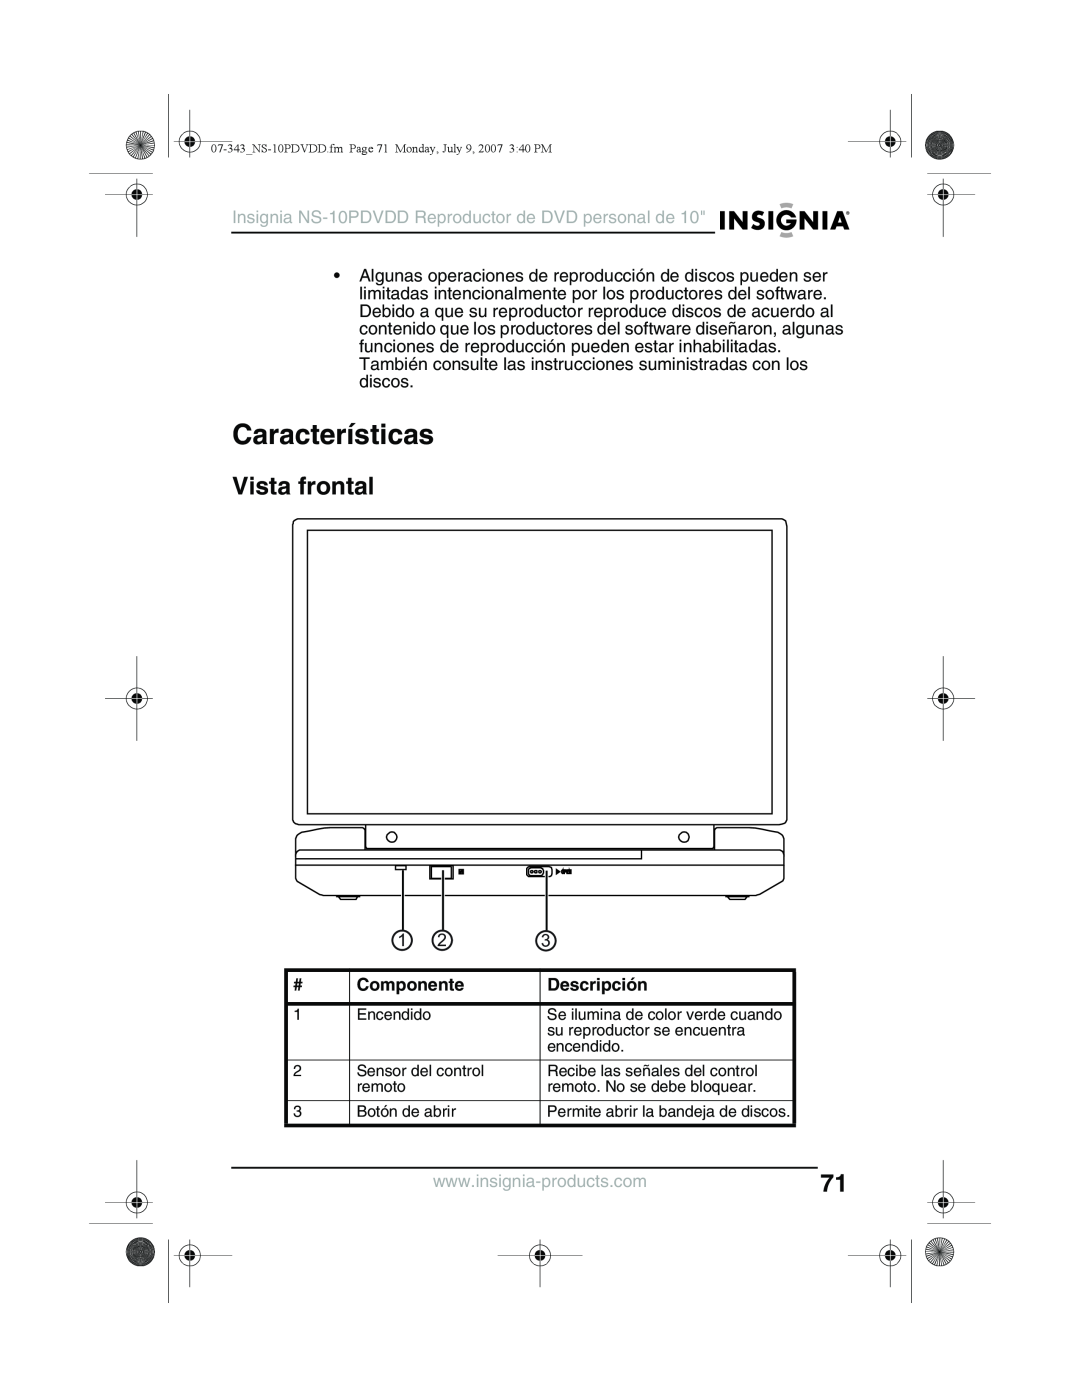 Insignia NS-10PDVDD manual Características, Vista frontal, Componente, Descripción 